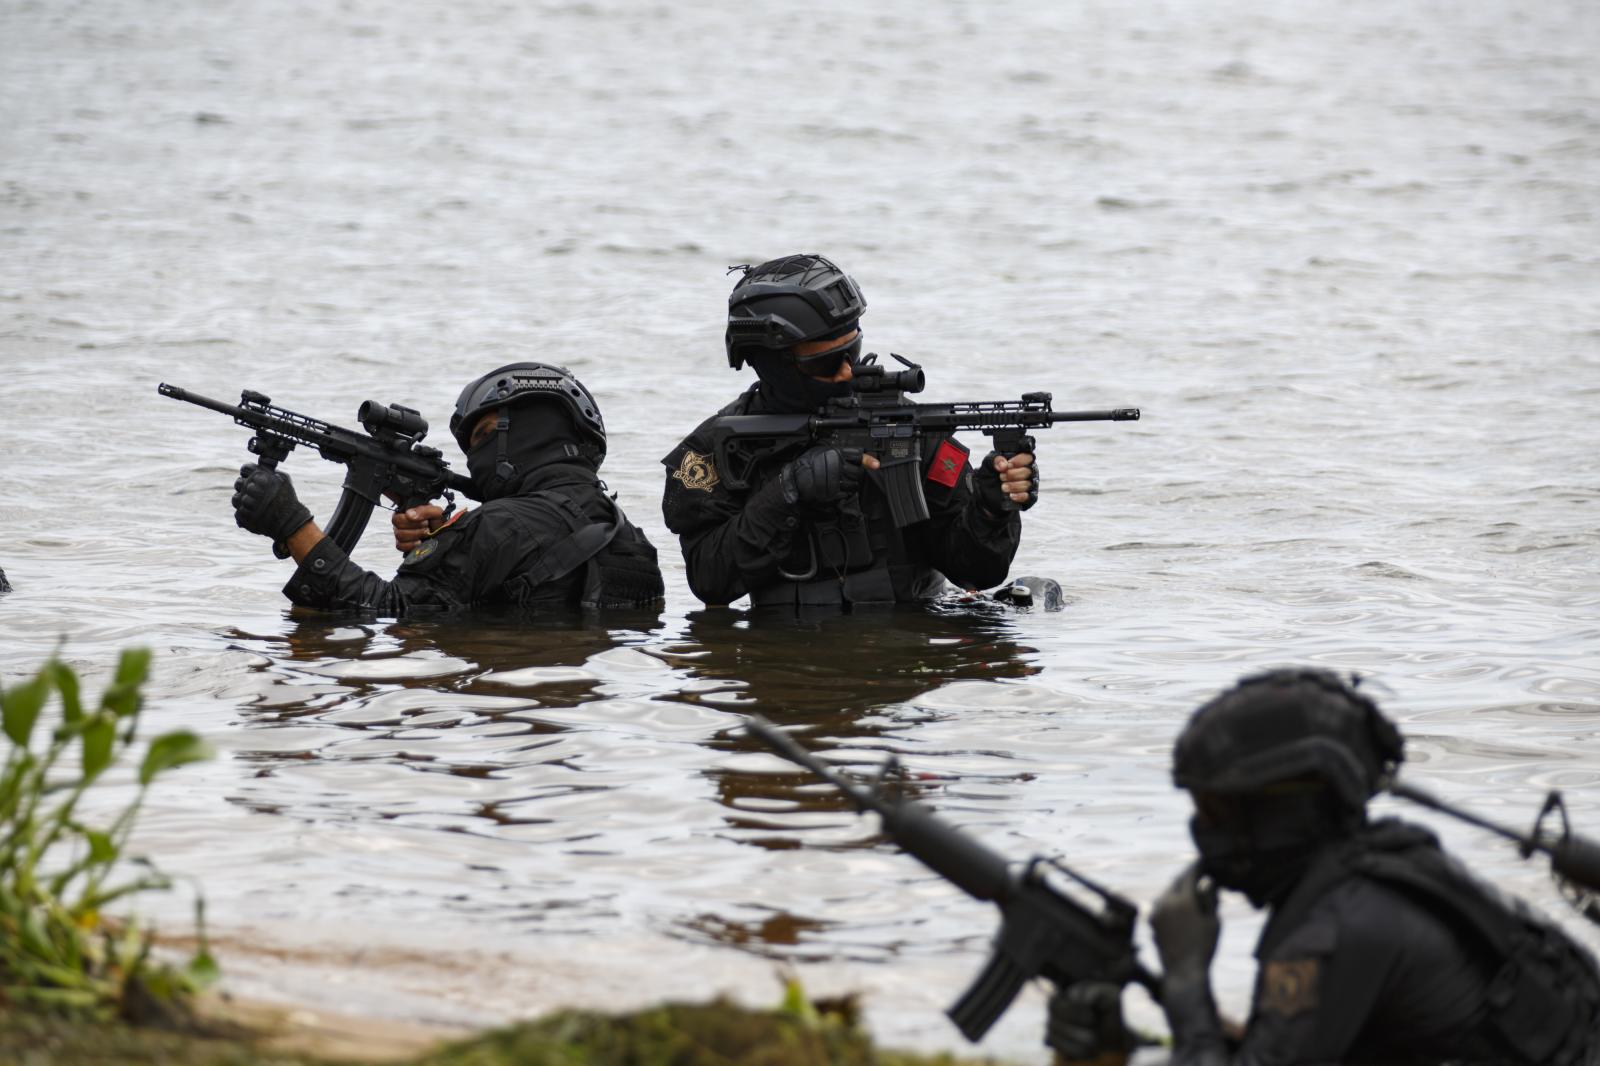 Image from Flintlock 2023 - Ghanaian soldiers conduct combat drills during Flintlock...